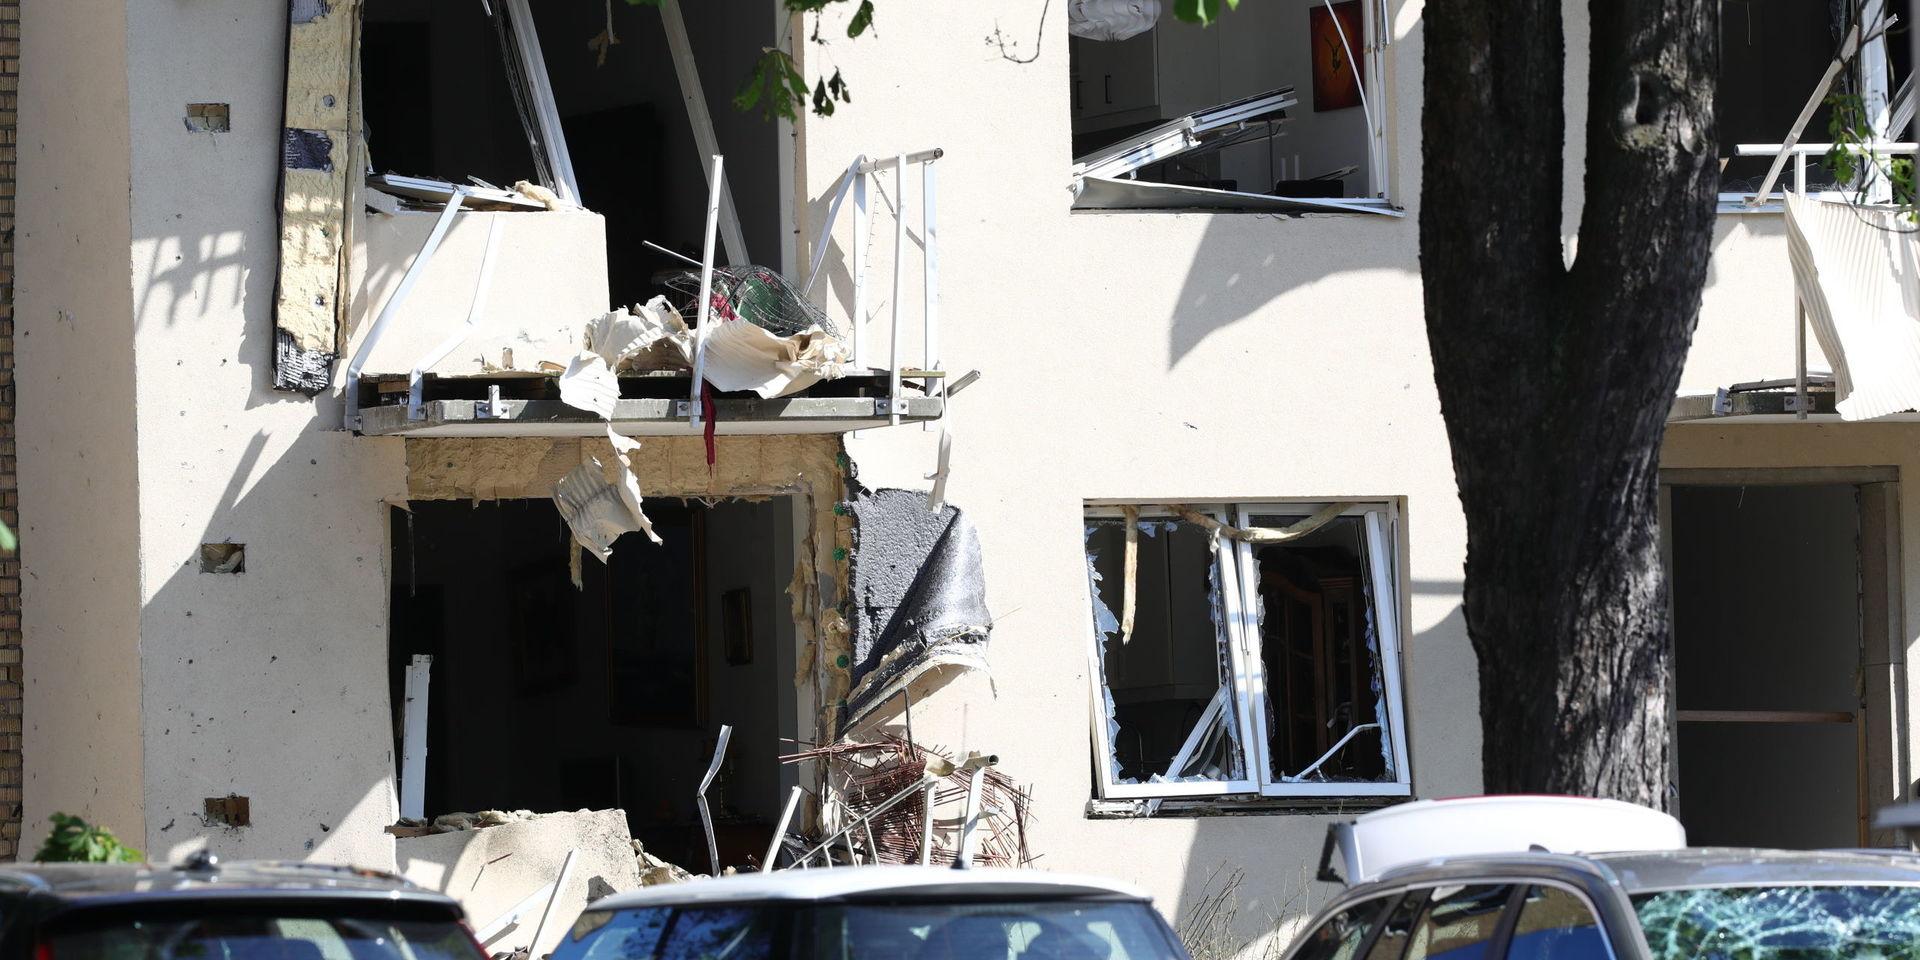 Ett 20-tal personer skadades lindrigt vid en kraftig explosion i Linköping den 7 juni. Ett hundratal lägenheter fick skador på fönster och balkonger.